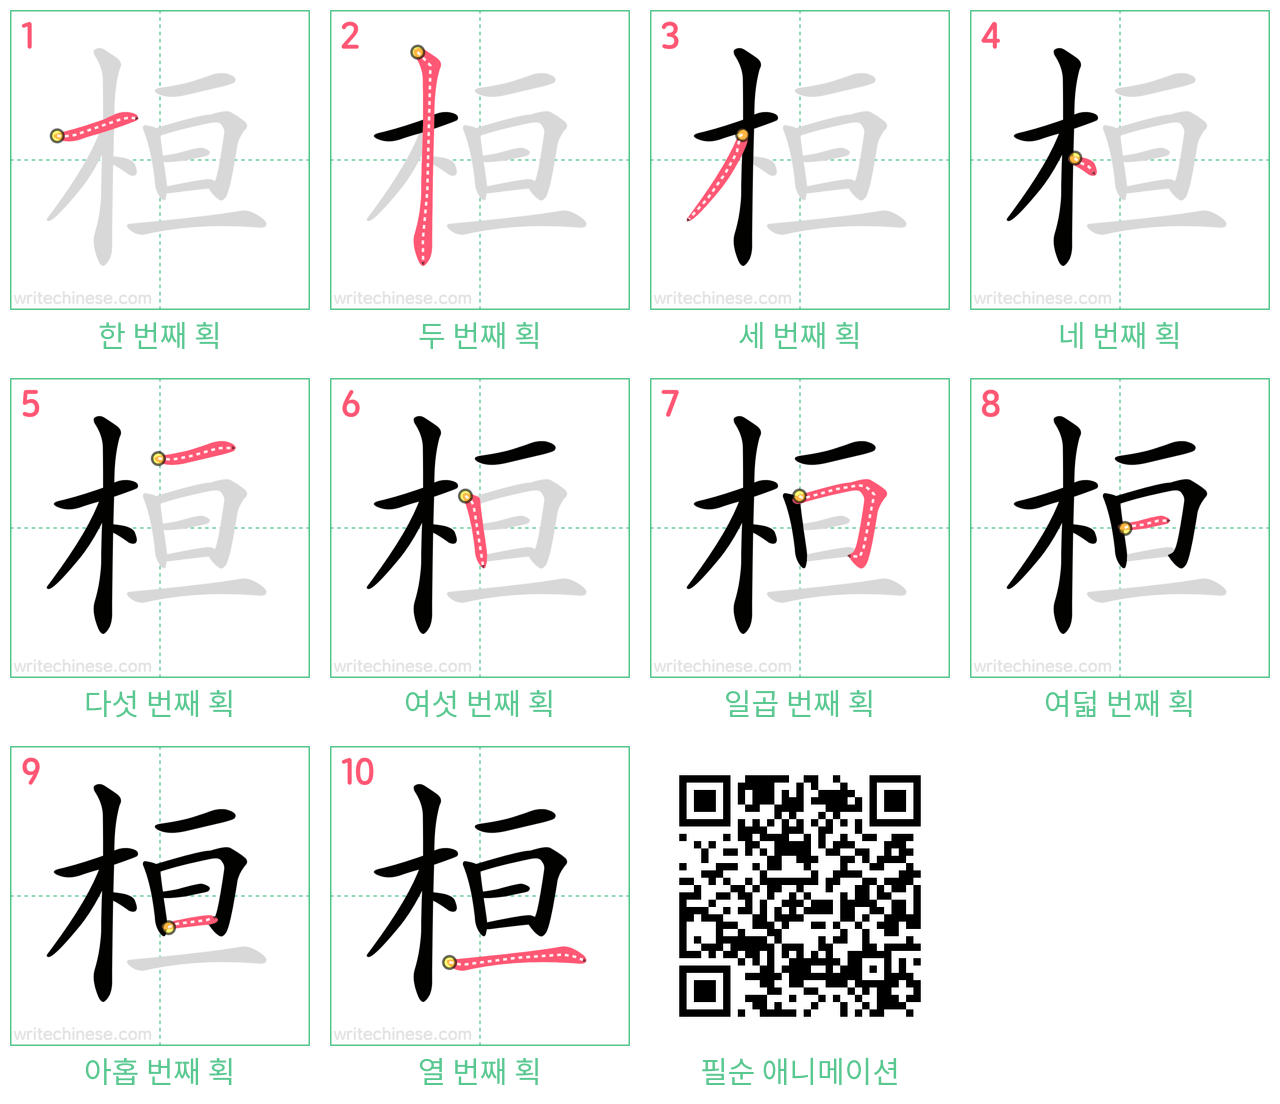 桓 step-by-step stroke order diagrams